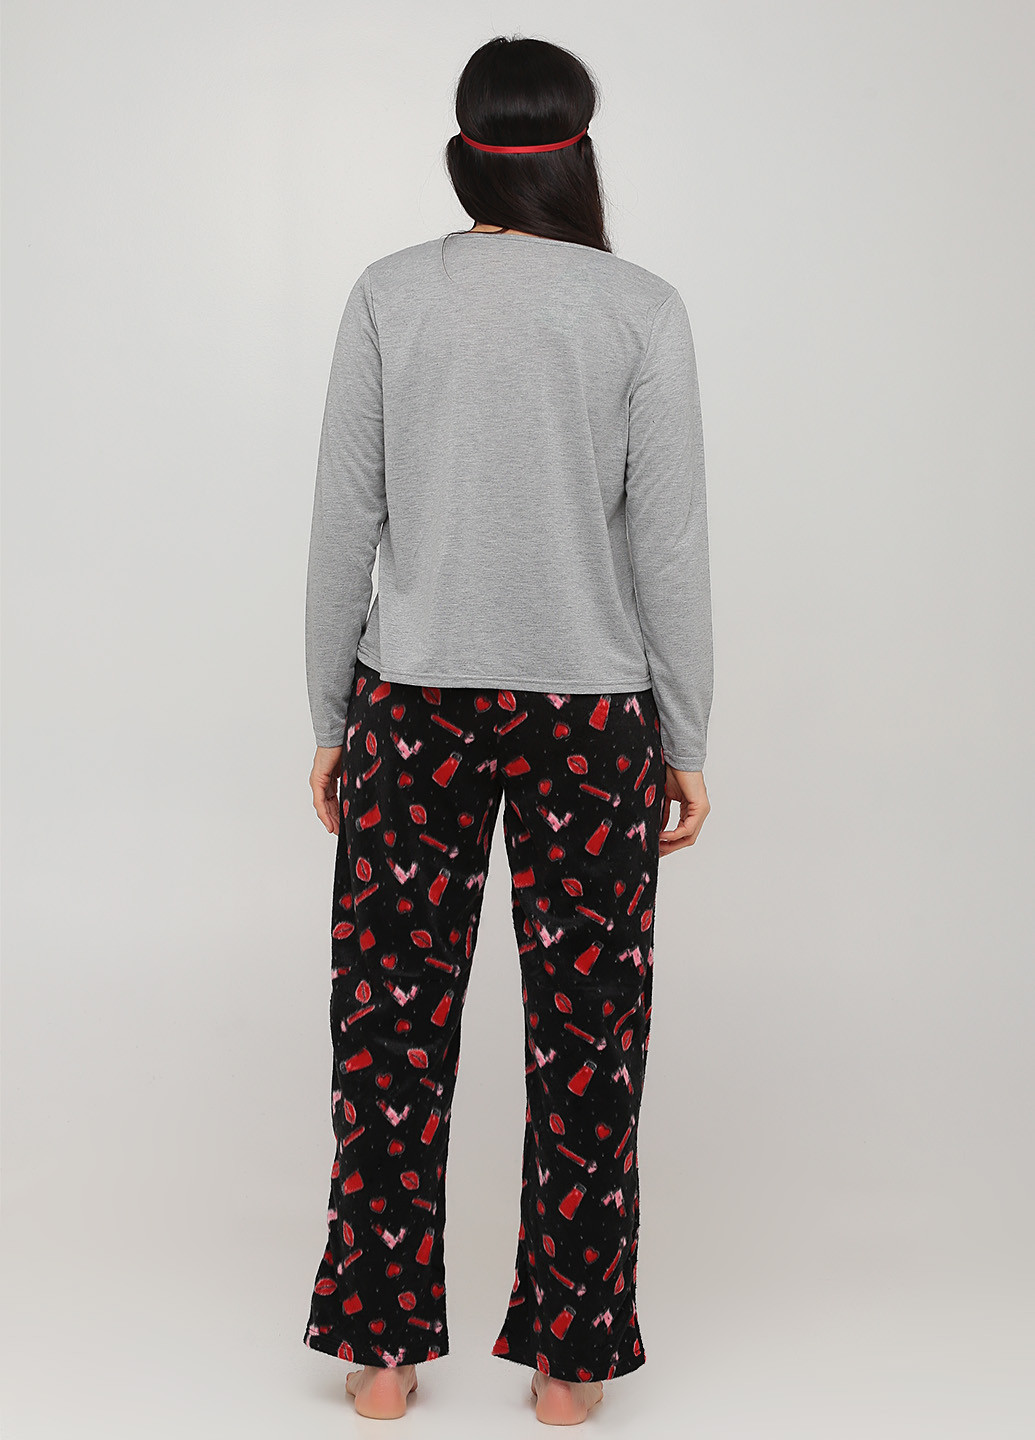 Комбинированная всесезон пижама (лонгслив, брюки, маска для сна) лонгслив + брюки Studio